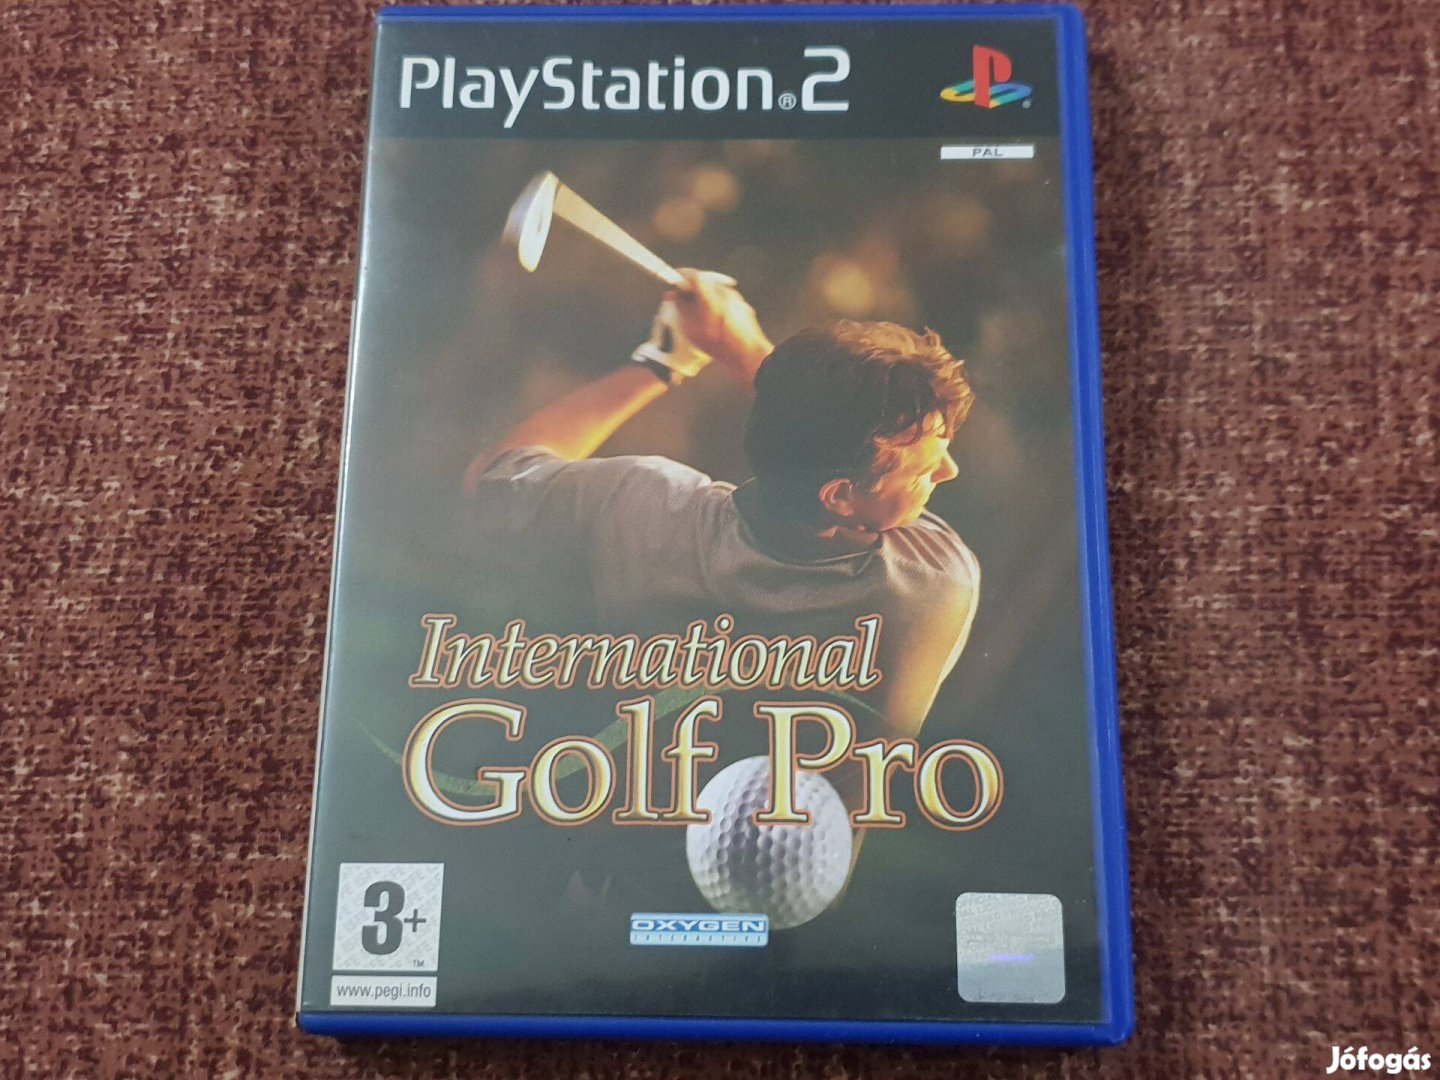 International Golf Pro Playstation 2 eredeti lemez eladó ( 2000 Ft)